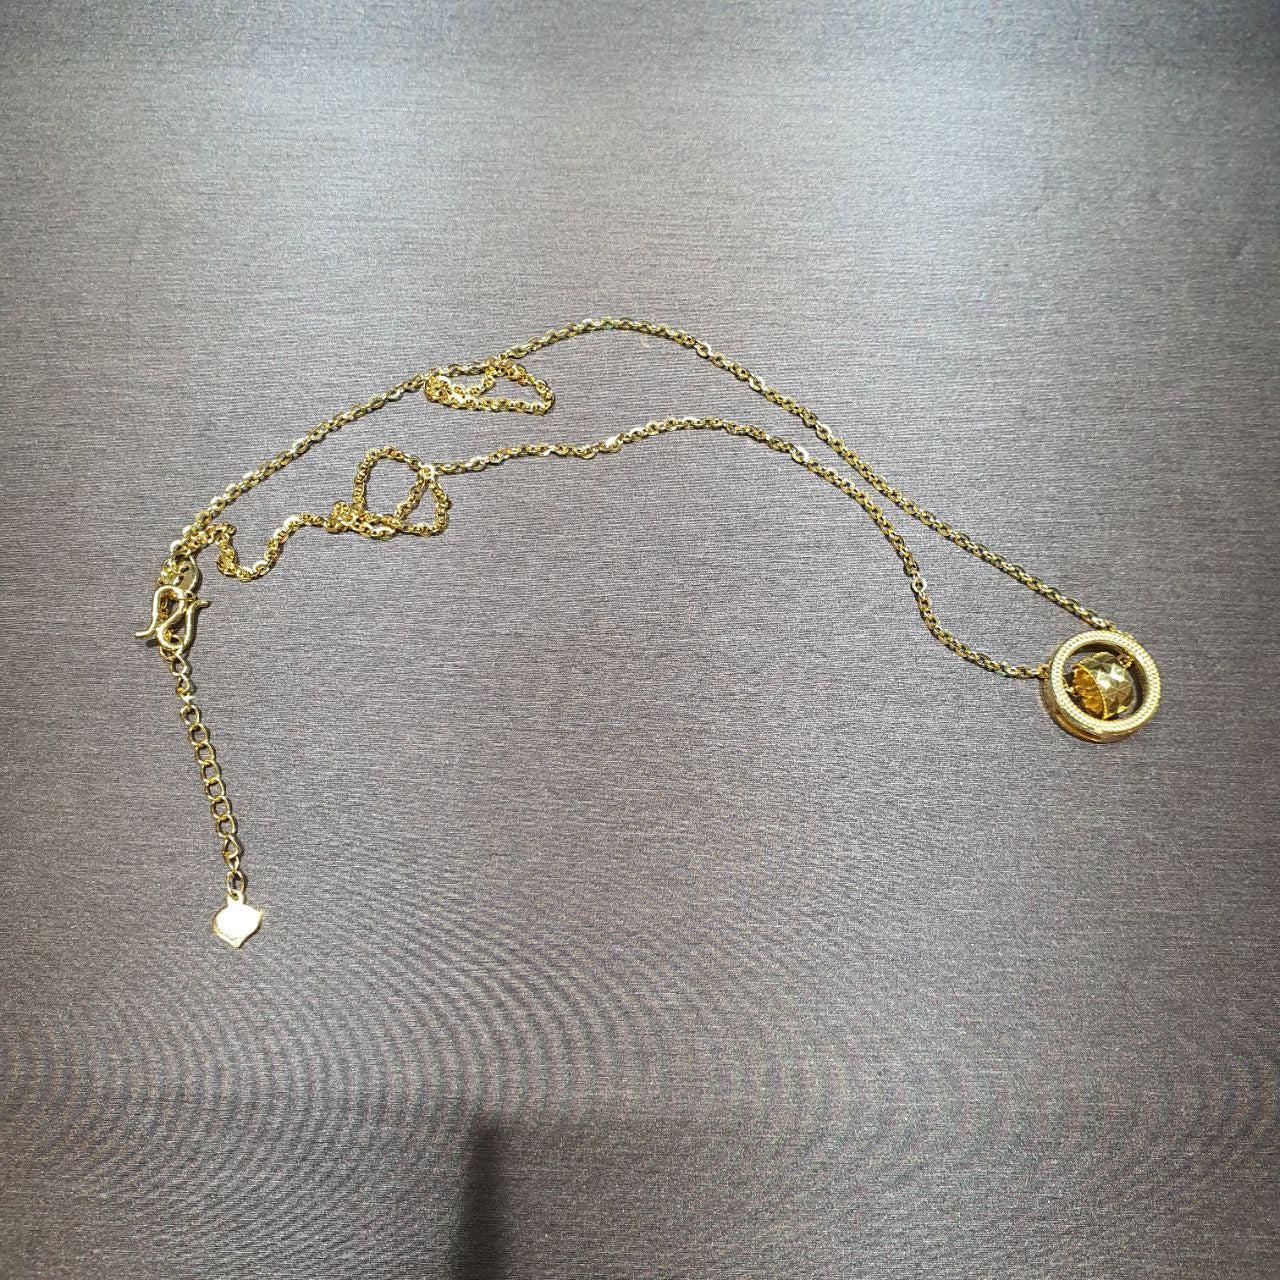 22k / 916 Gold Movable Pendant Necklace-Necklaces-Best Gold Shop